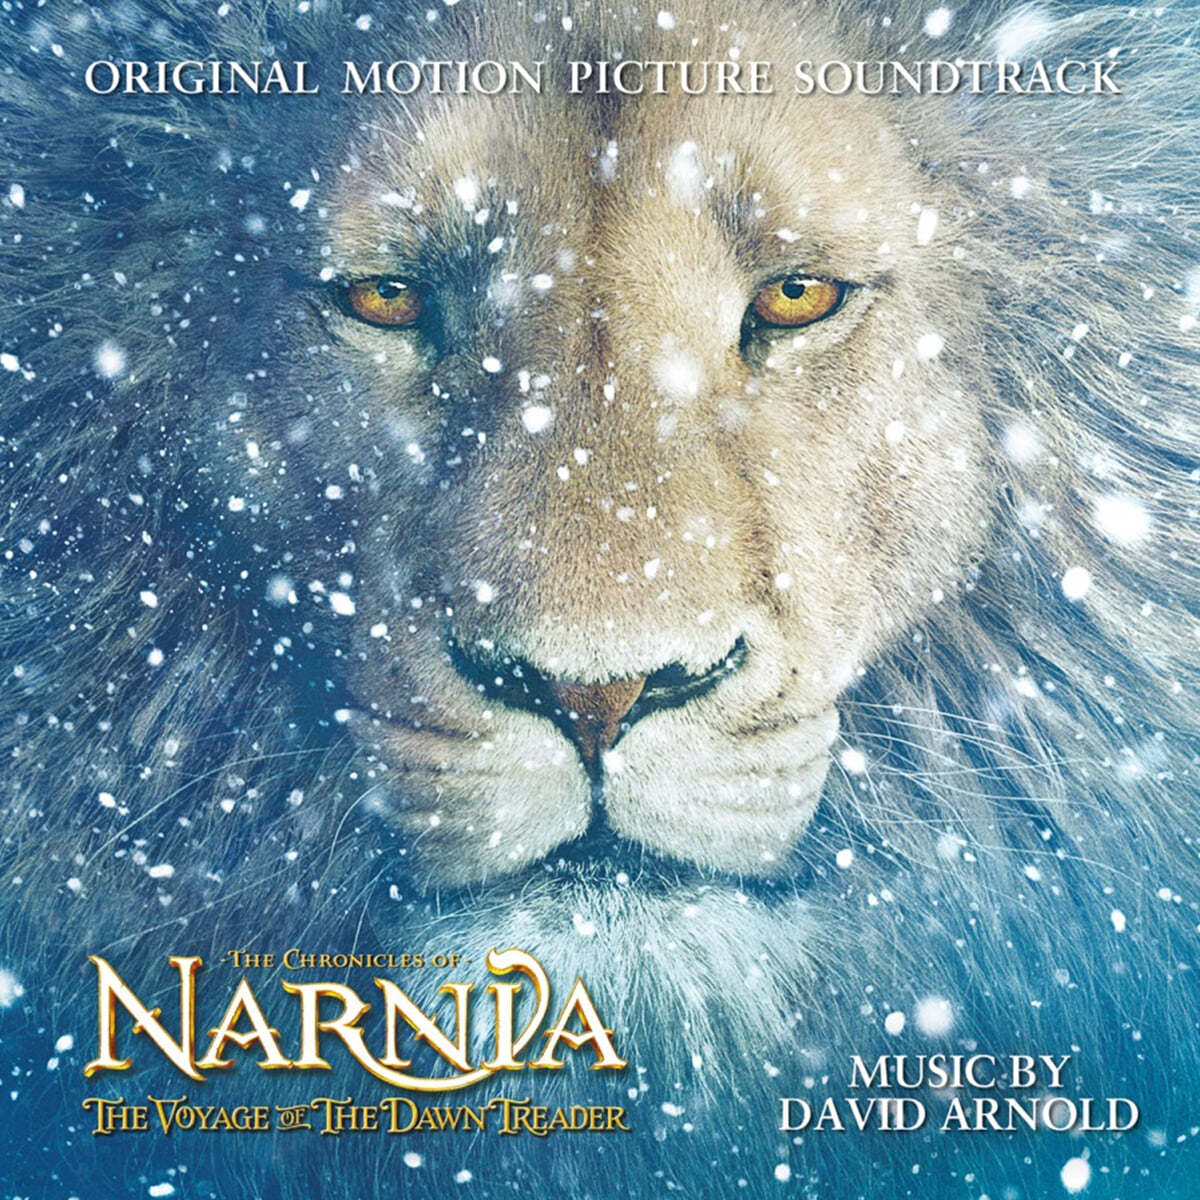 나니아 연대기: 새벽 출정호의 항해 영화음악 (The Chronicles of Narnia: The Voyage of the Dawn Treader OST) [2LP] 